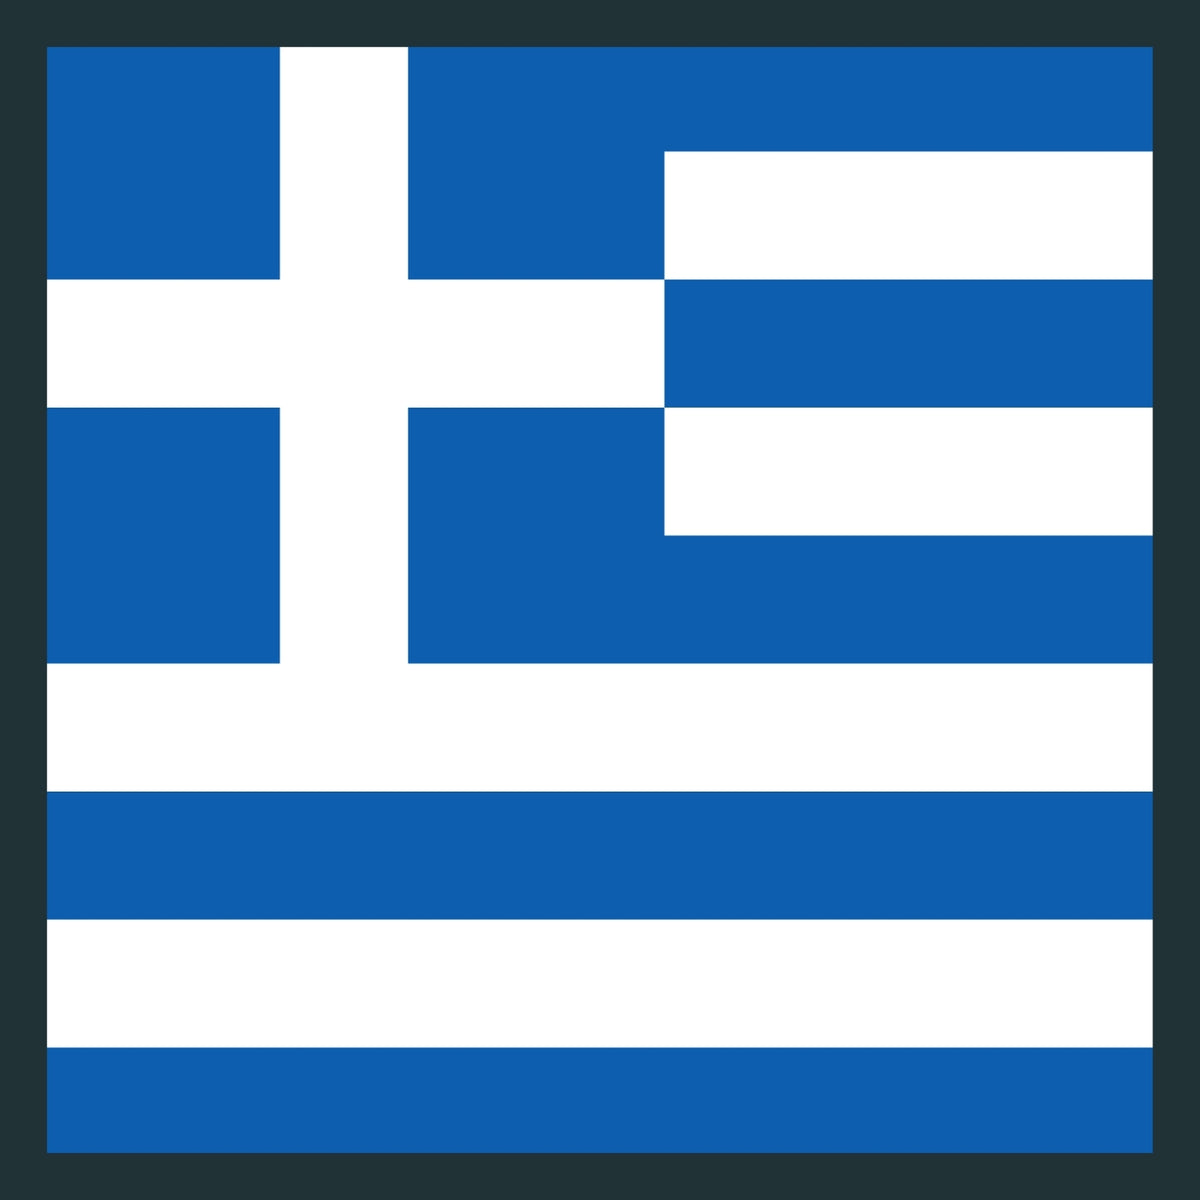 Greek CAMO Produts